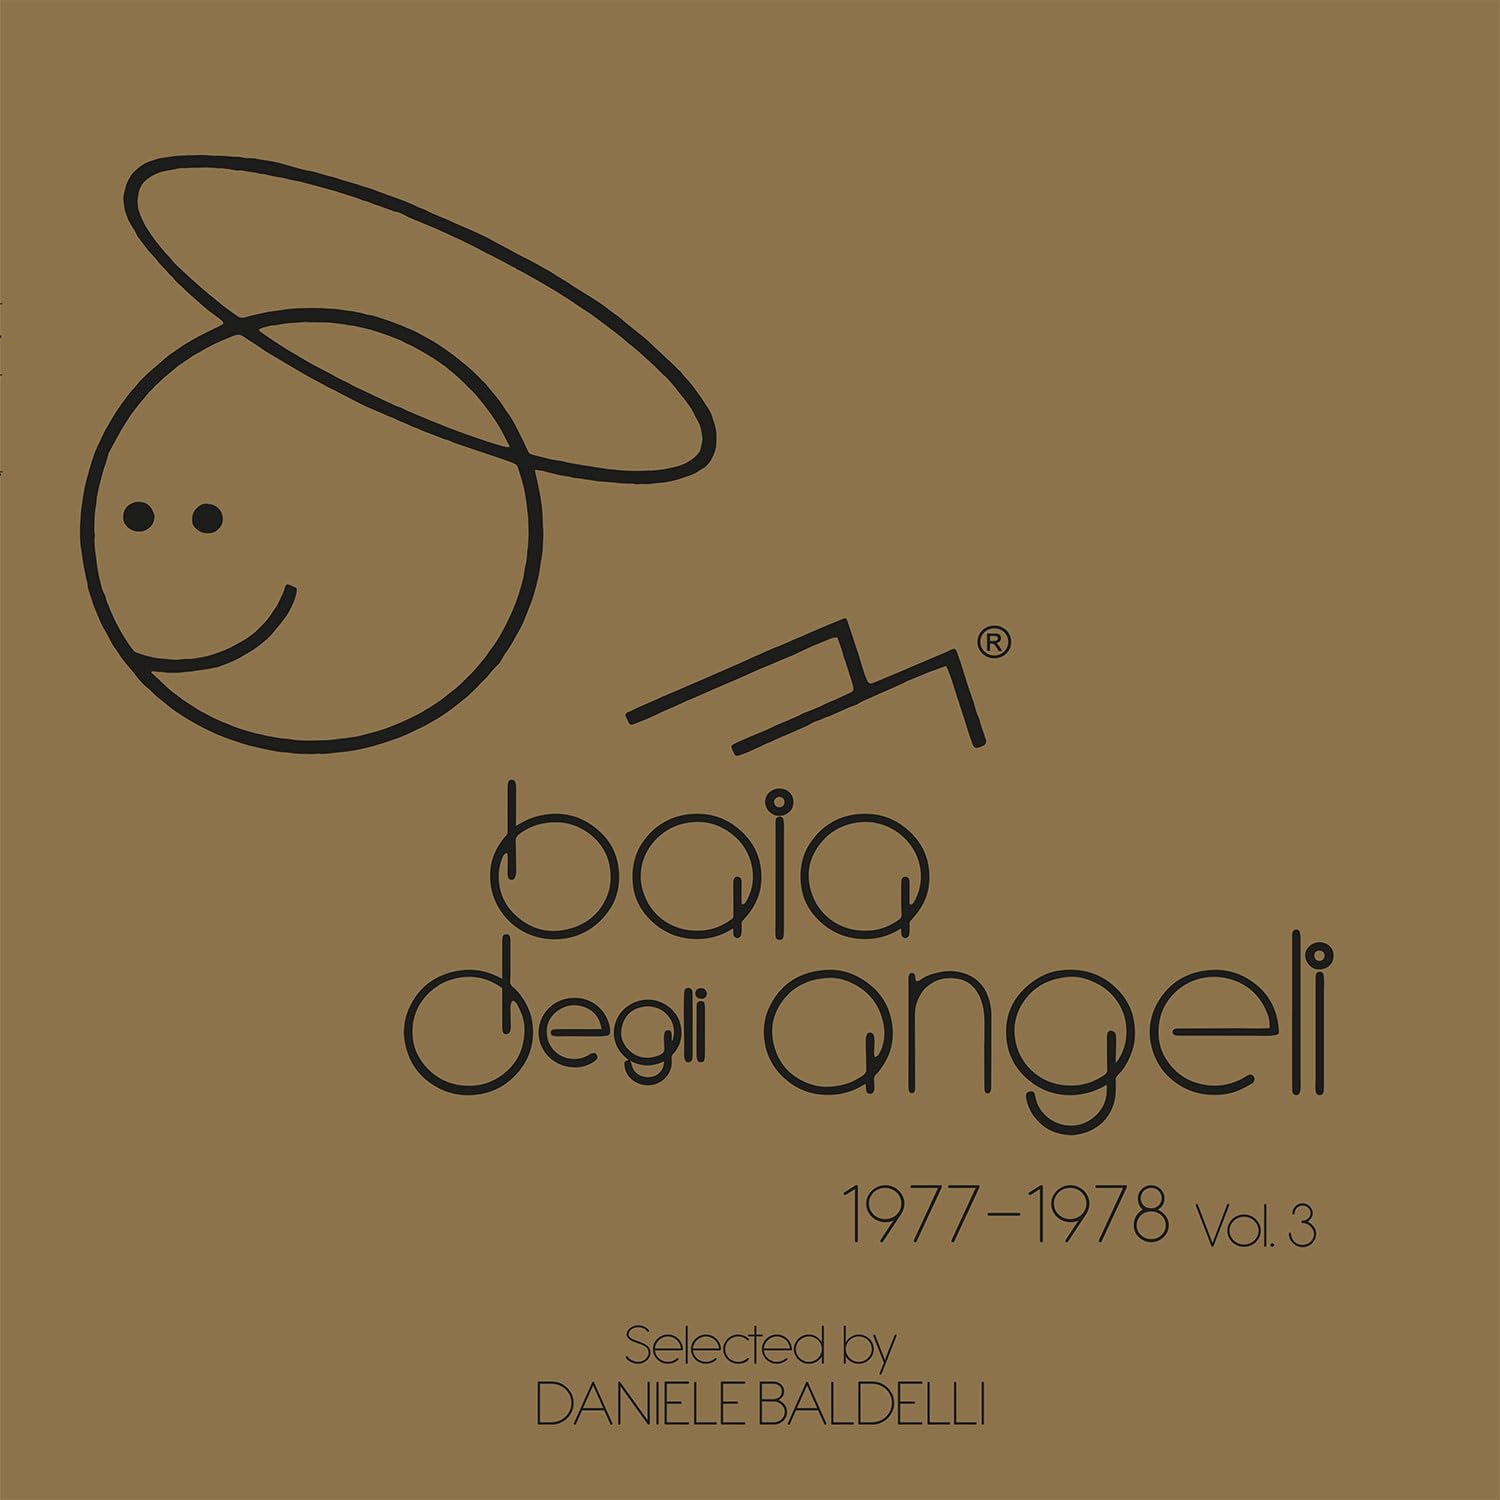 Vinile Daniele Baldelli - Baia Degli Angeli 1977-1978 Vol 3 (2 Lp) NUOVO SIGILLATO, EDIZIONE DEL 23/06/2023 SUBITO DISPONIBILE